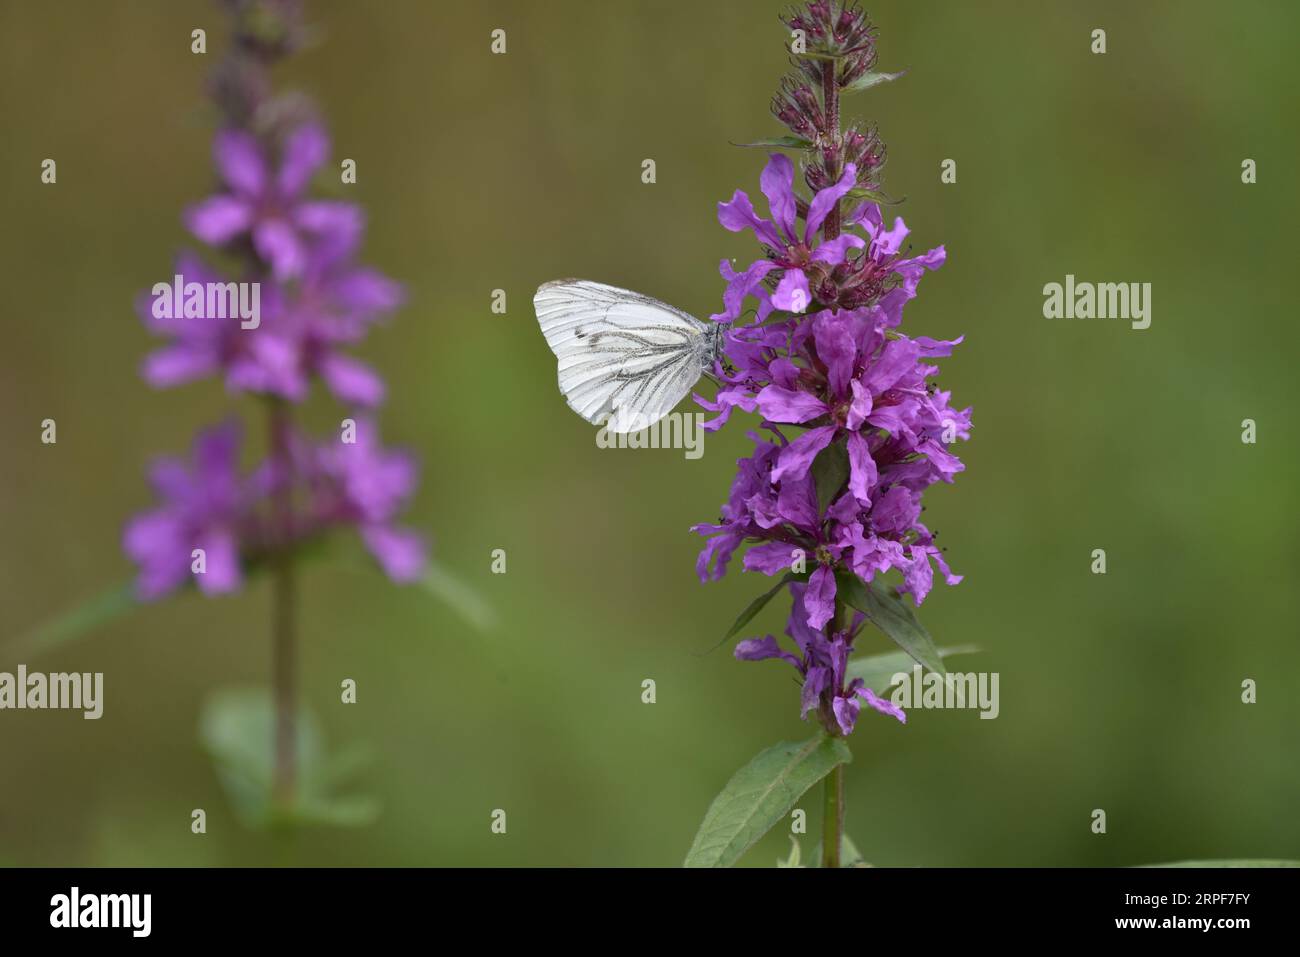 Immagine di profilo destro di una piccola farfalla bianca (Pieris rapae) con Proboscis e antenna in fiori di campo viola, su sfondo verde chiaro Foto Stock